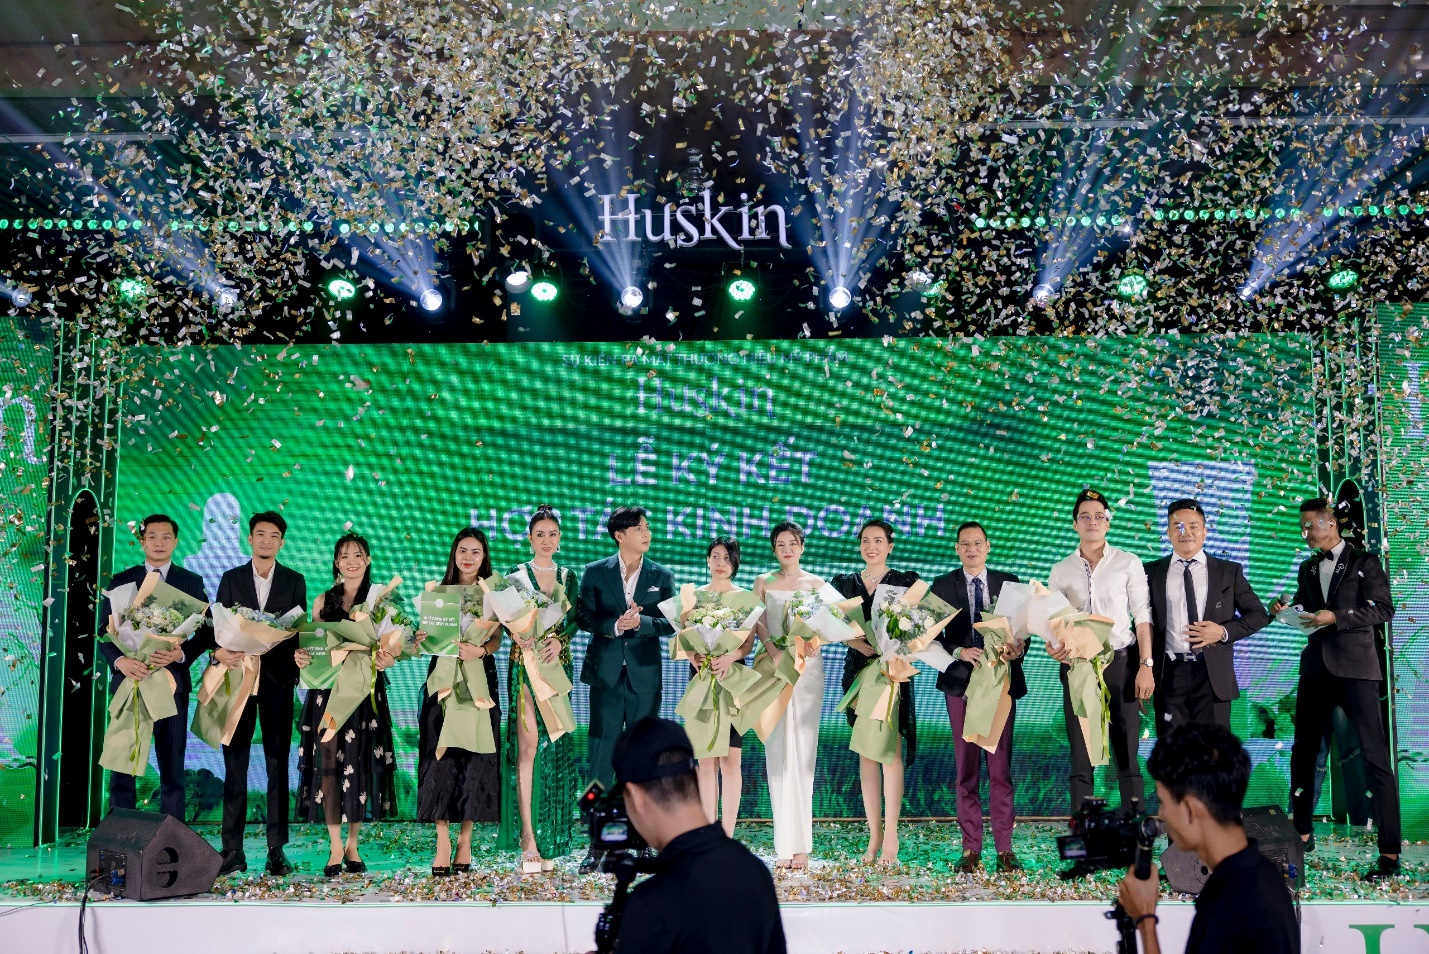 Vợ chồng Hồ Quang Hiếu ra mắt thương hiệu mỹ phẩm Huskin - Ảnh 5.